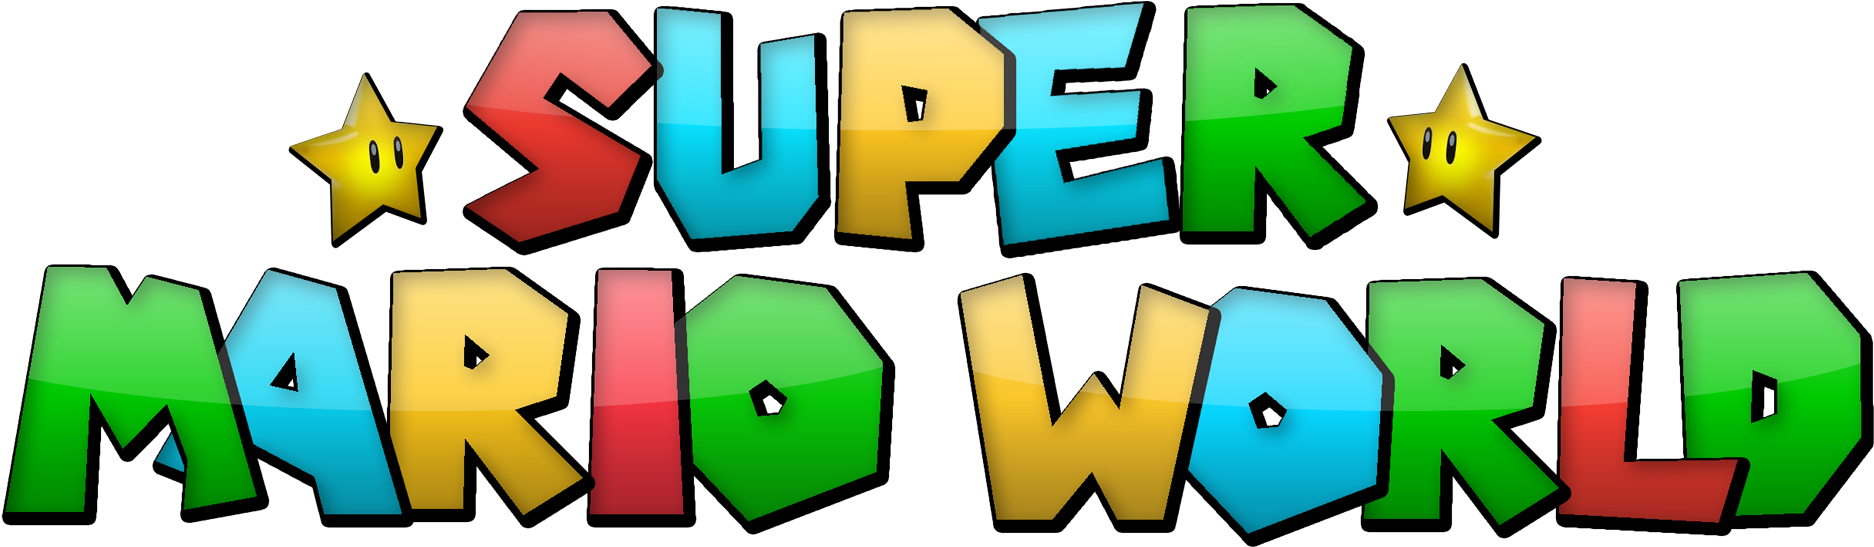 An Easier Logo - Super Mario World (2583x913)